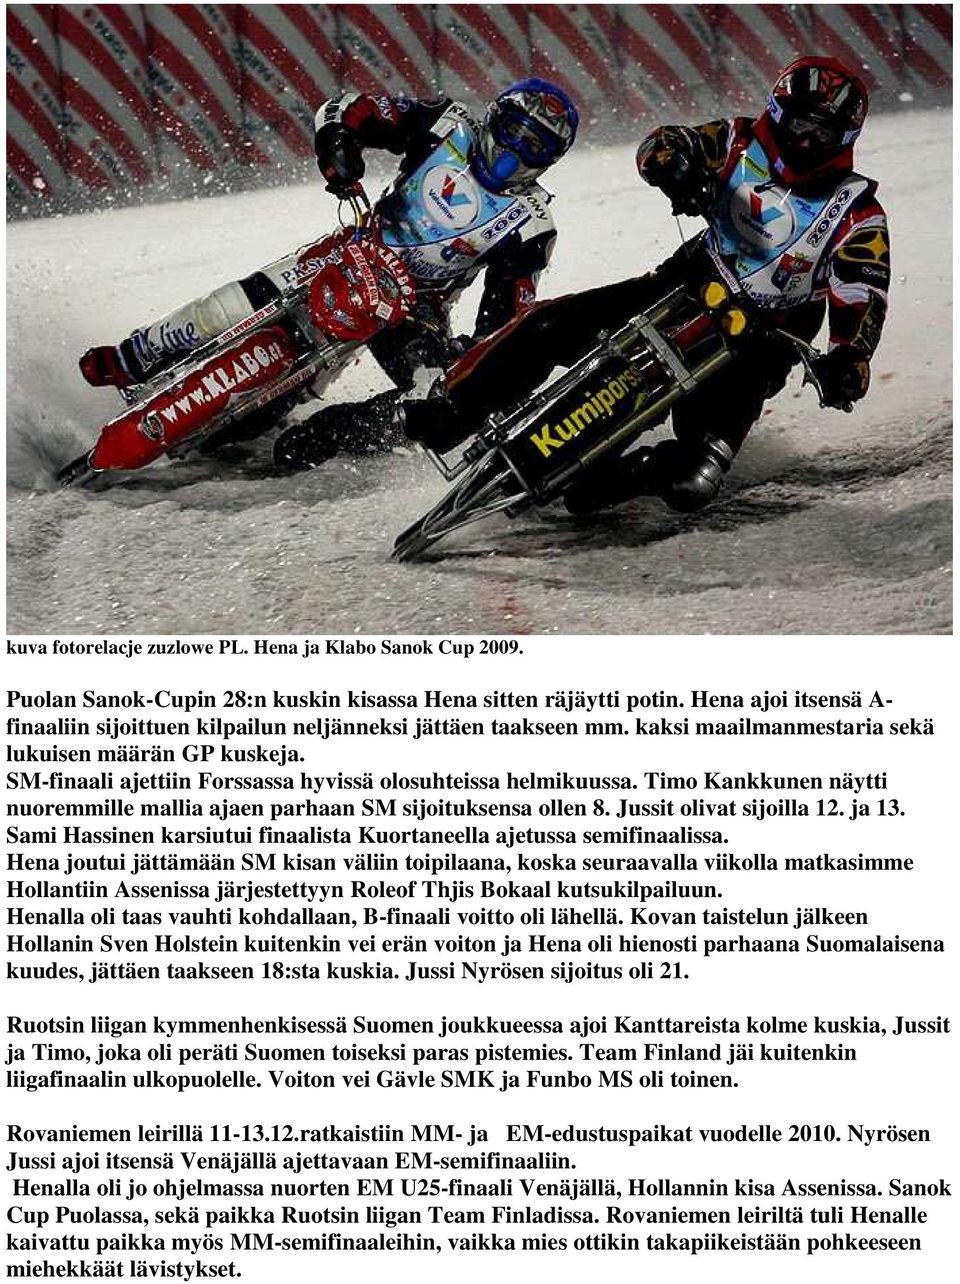 SM-finaali ajettiin Forssassa hyvissä olosuhteissa helmikuussa. Timo Kankkunen näytti nuoremmille mallia ajaen parhaan SM sijoituksensa ollen 8. Jussit olivat sijoilla 12. ja 13.